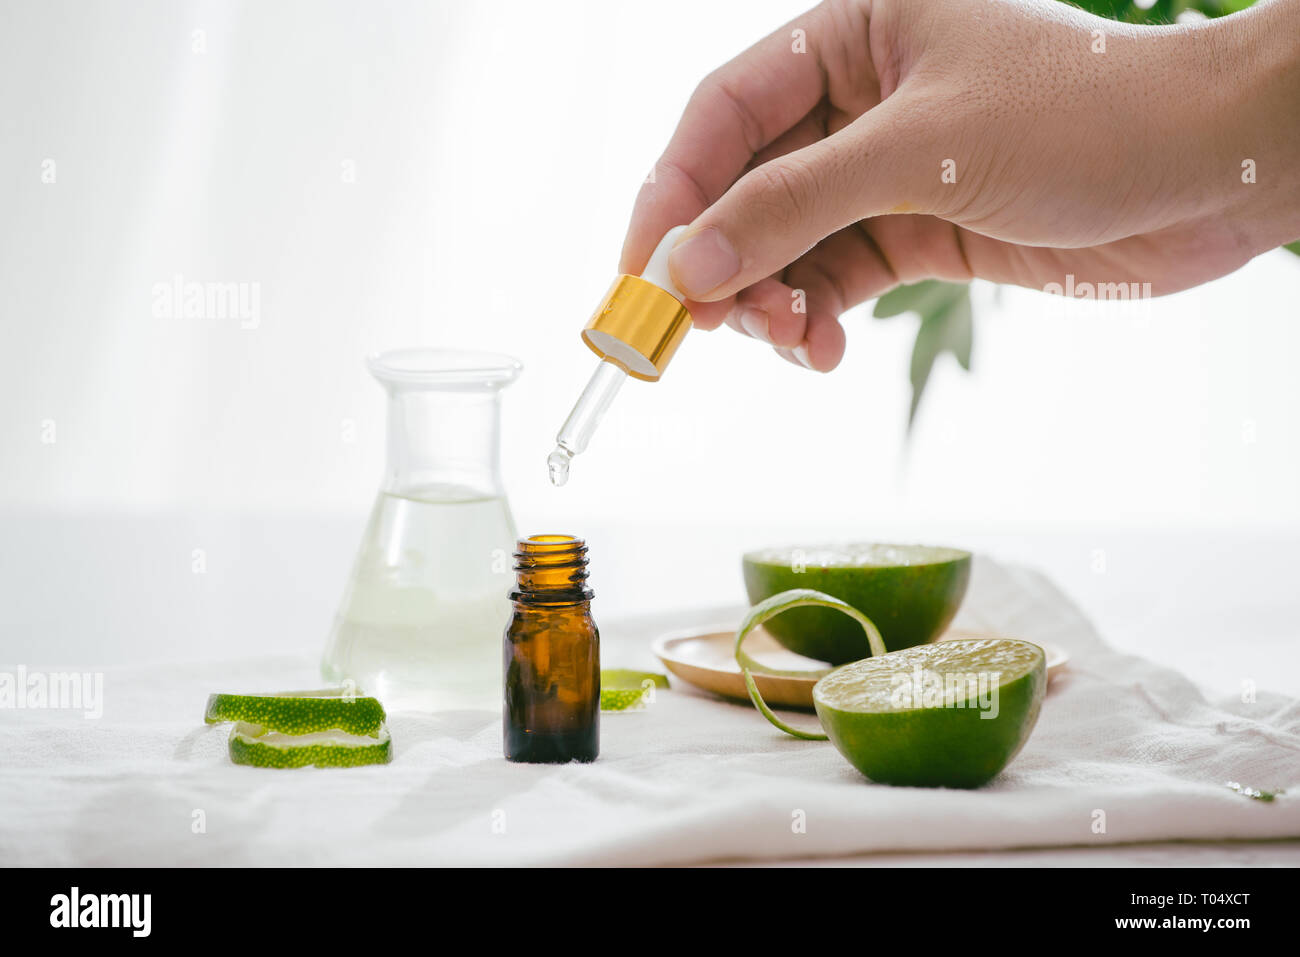 Orange aroma oil for aromatherapy Stock Photo